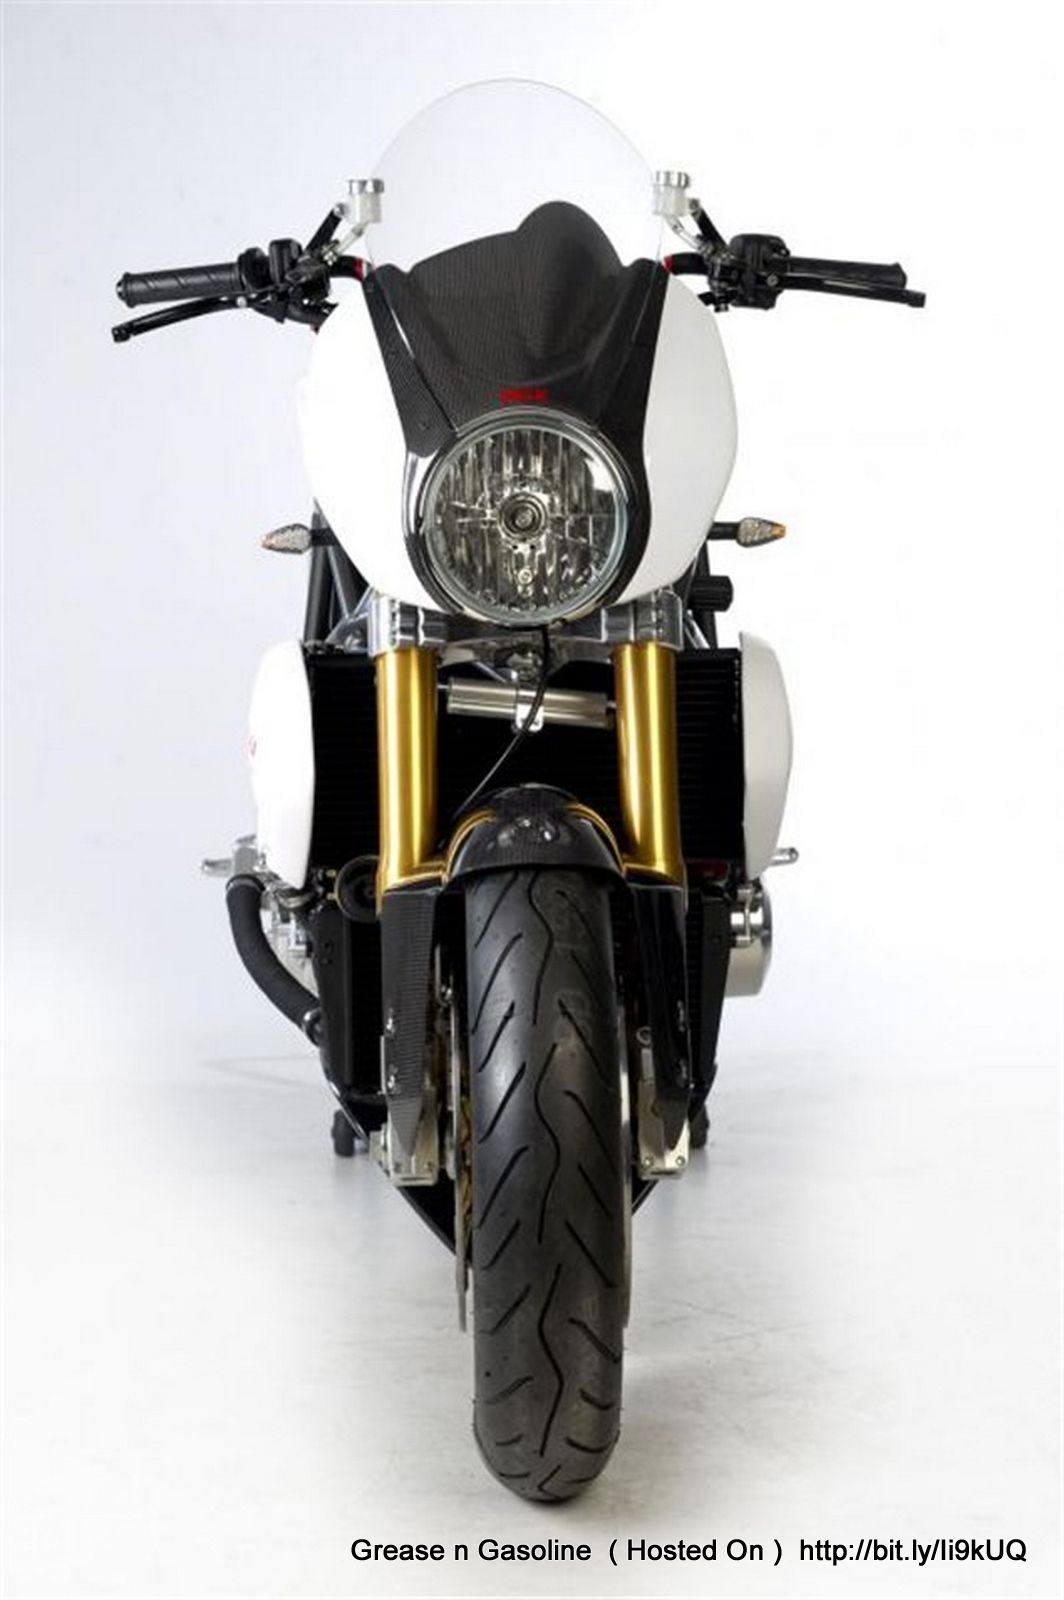 ... /Midalu-FGR-2500-V6-Revolutionary-Naked-Bike-front-design-view-5.jpg